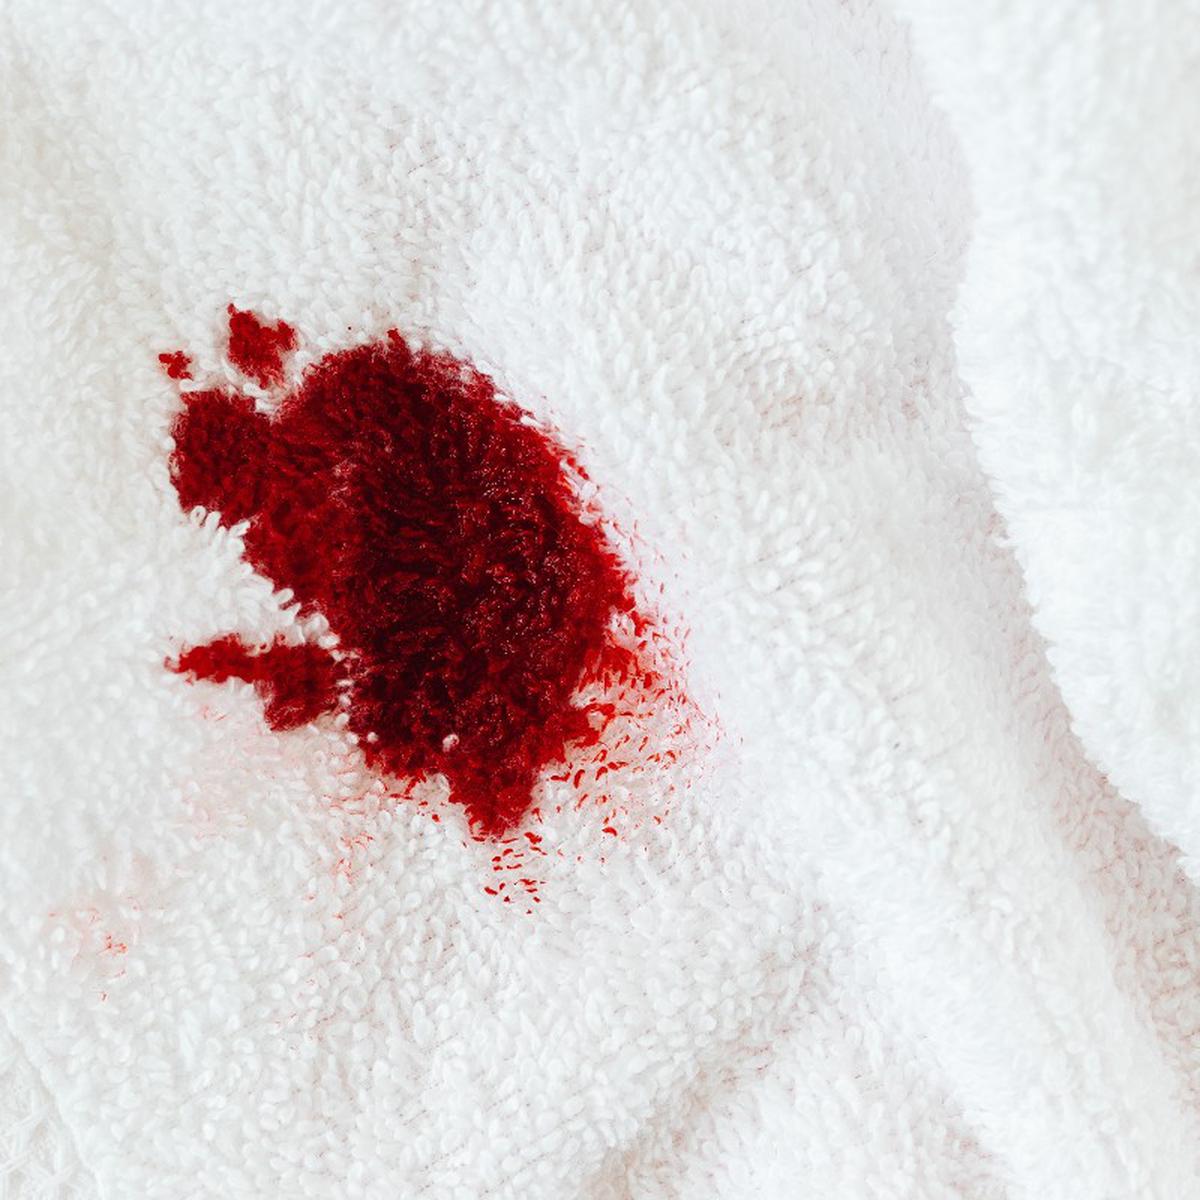 caseros para eliminar de sangre de la ropa | Remedios | Hacks | nnda nnni | RESPUESTAS | MAG.